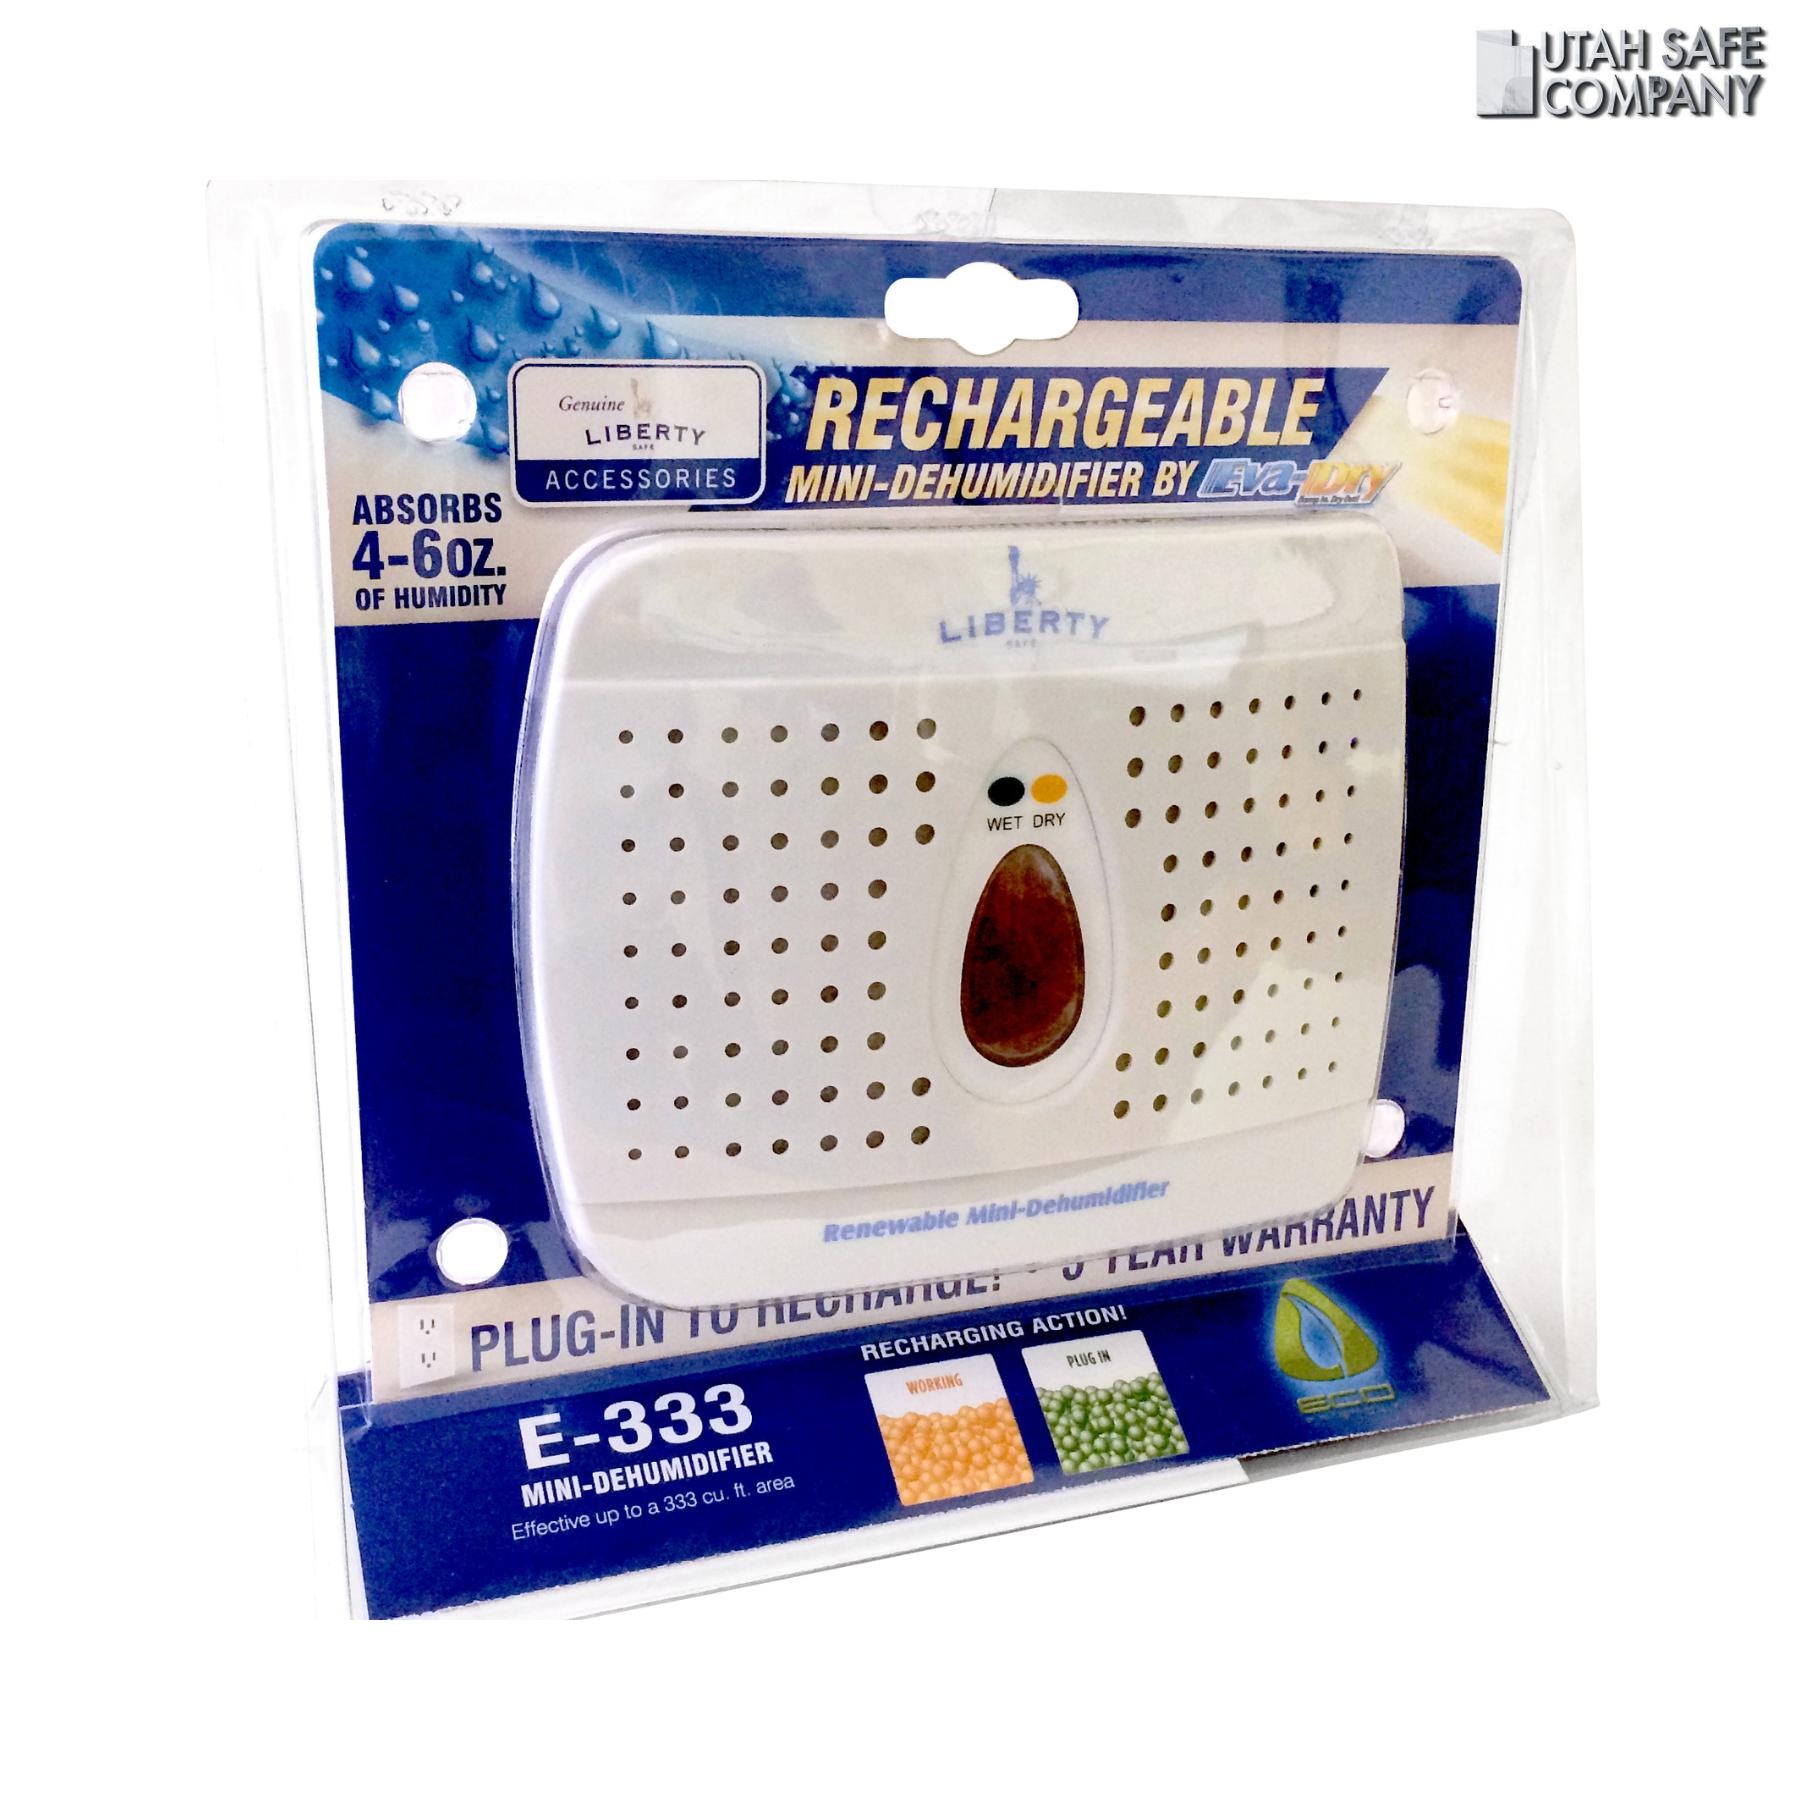 Rechargeable Eva-Dry Dehumidifier - Utah Safe Company